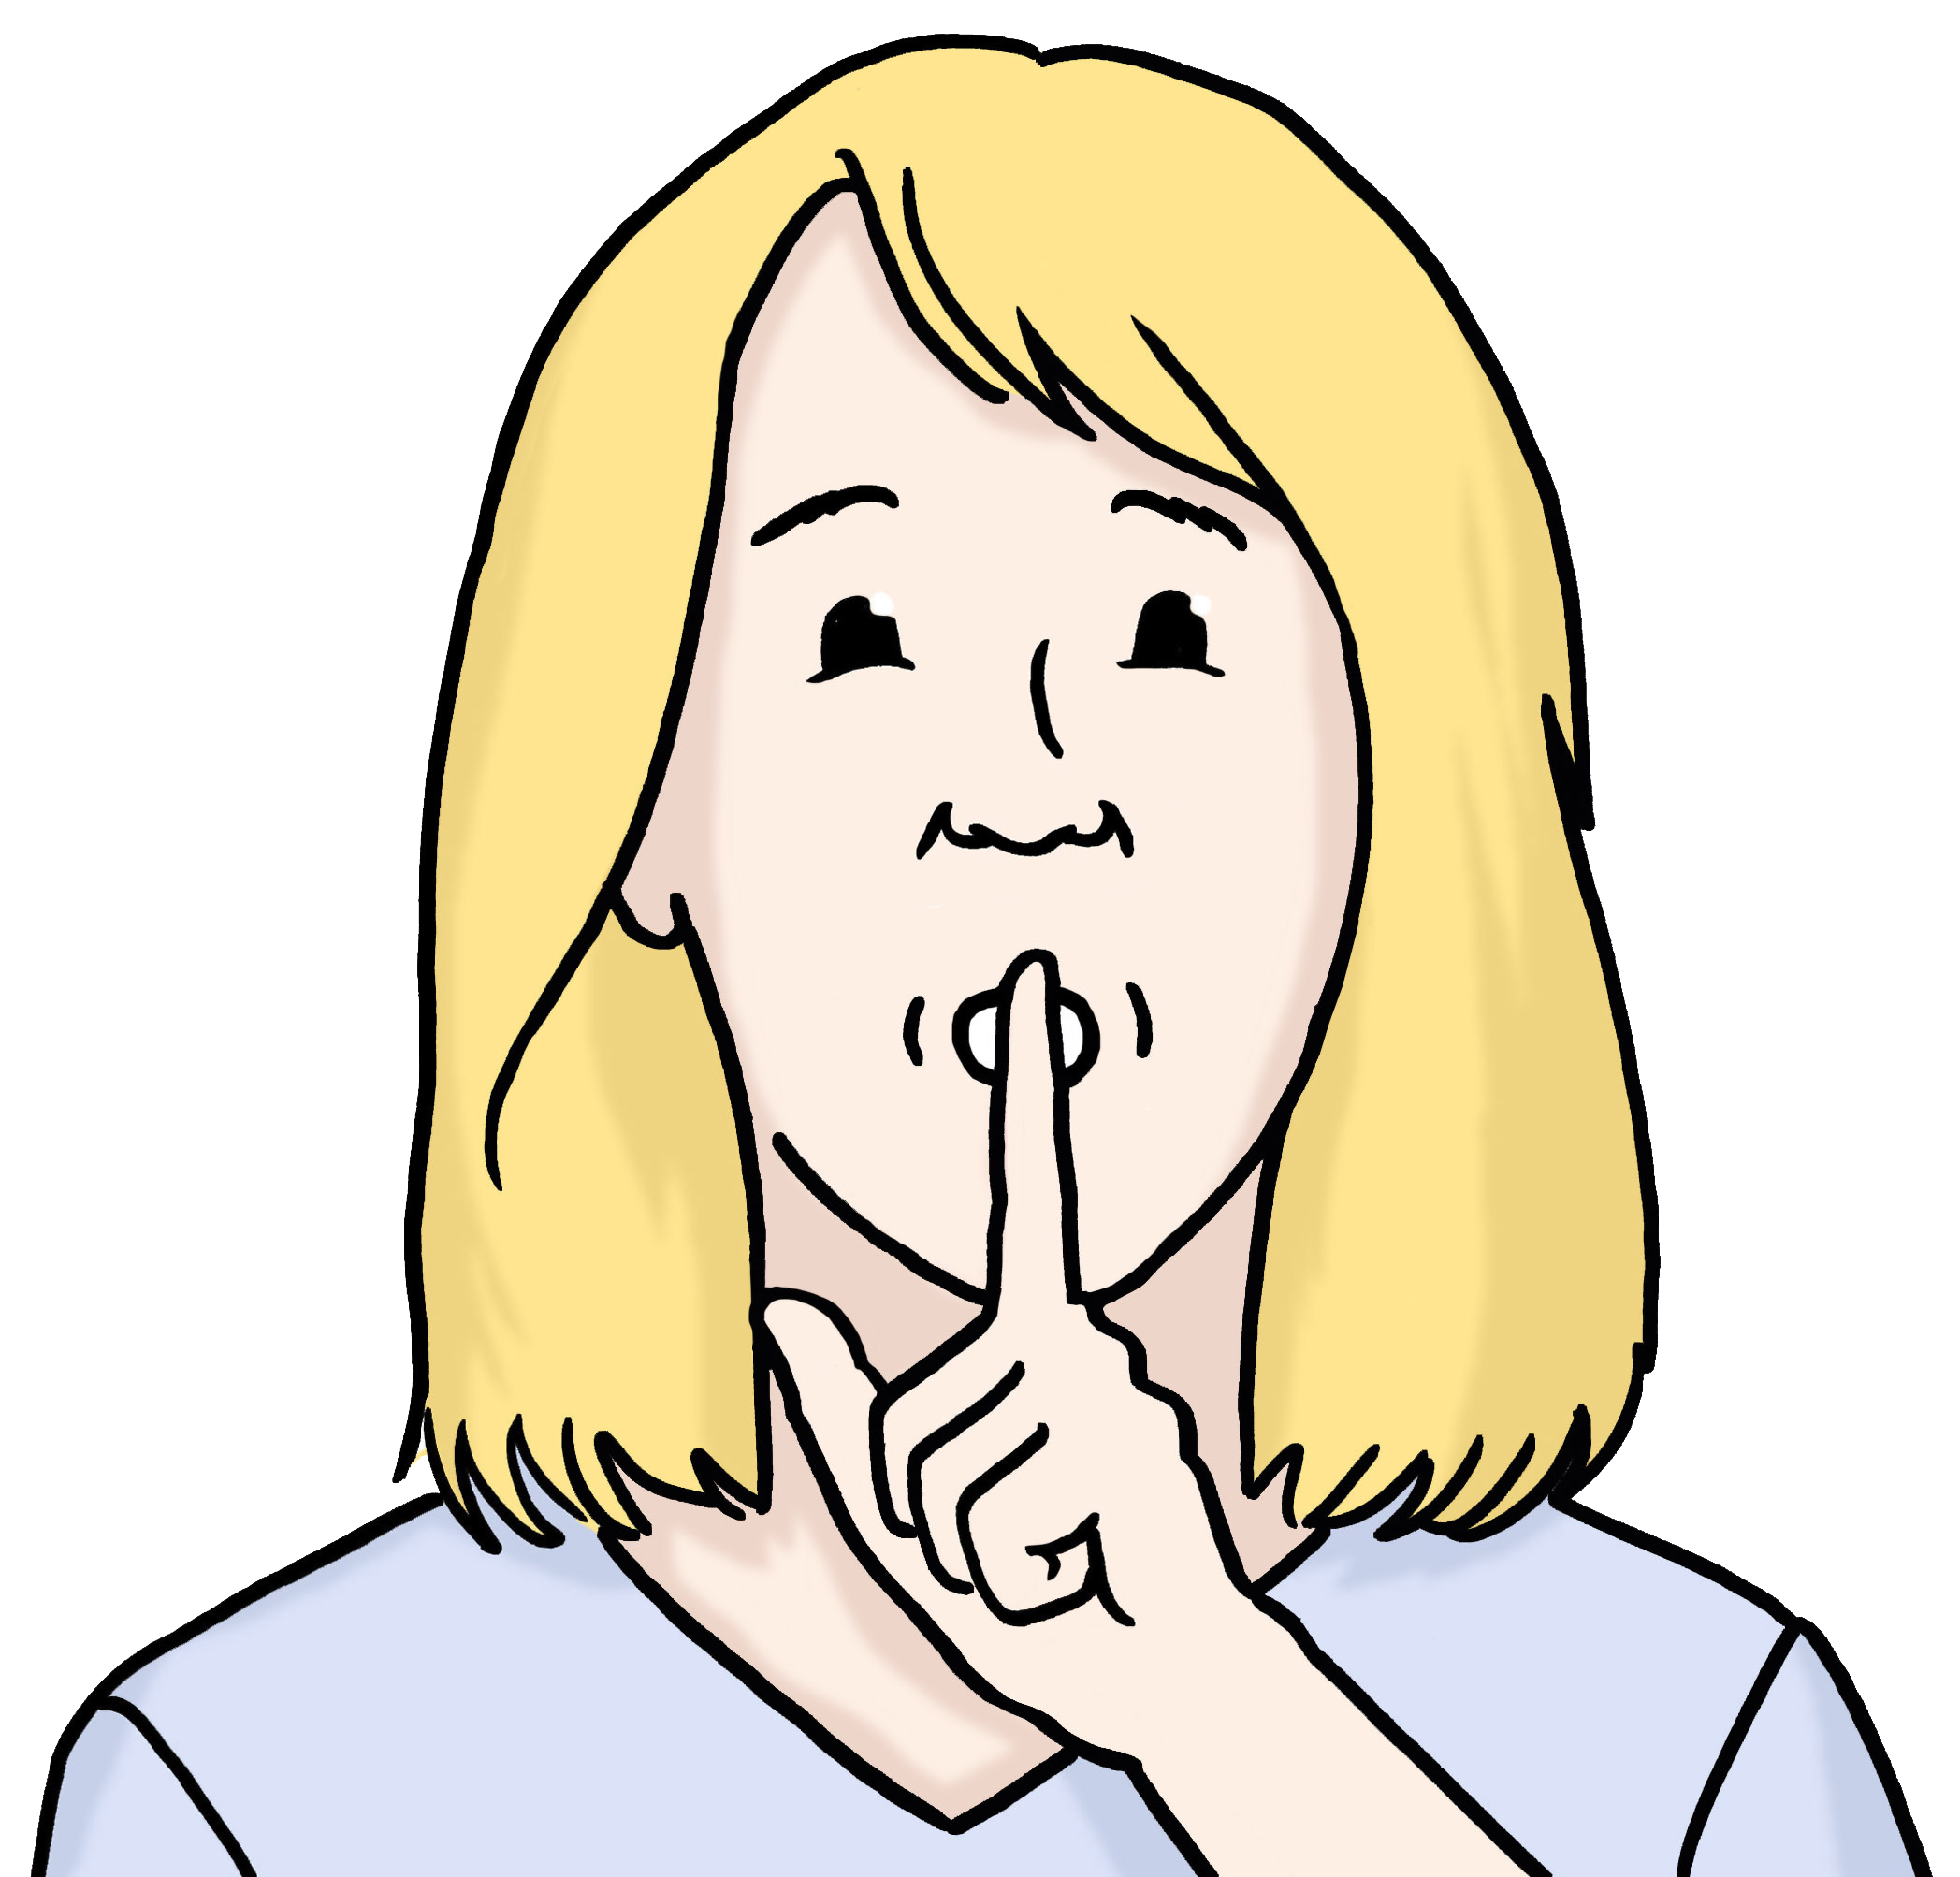 Leichte Sprache Bild: Eine Frau hält den Zeigefinger vor den Mund